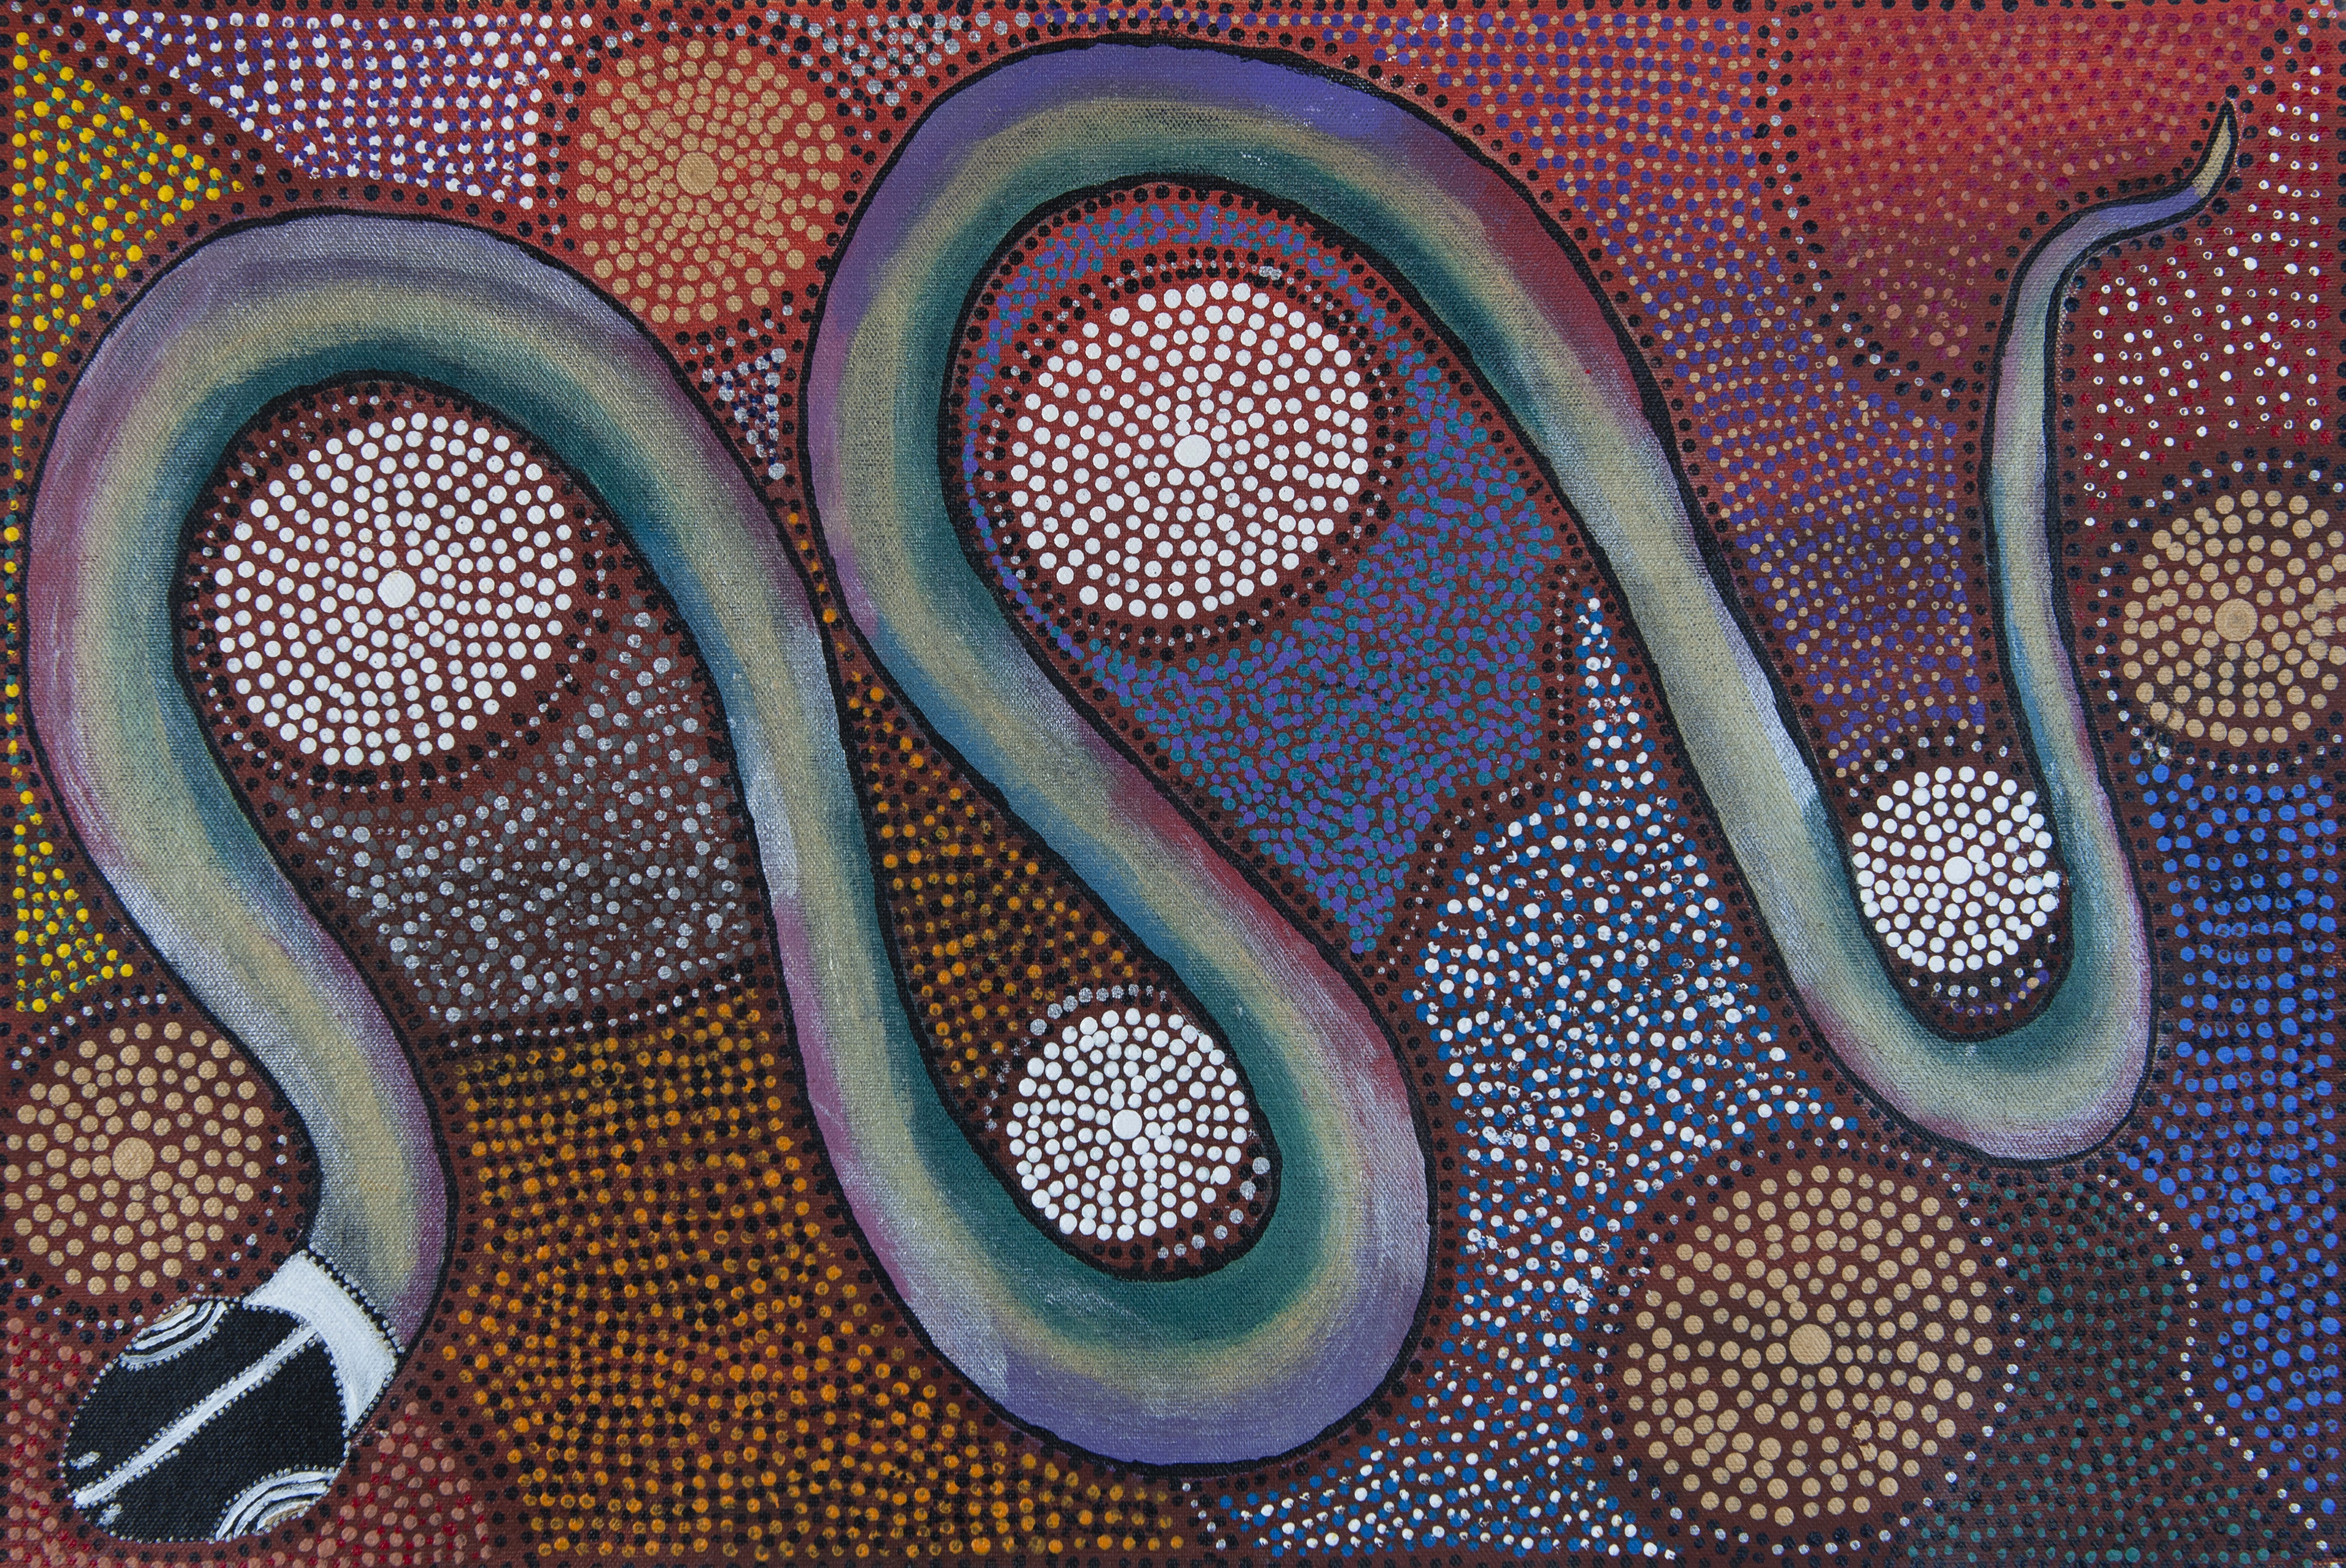 Aborigninal art serpent